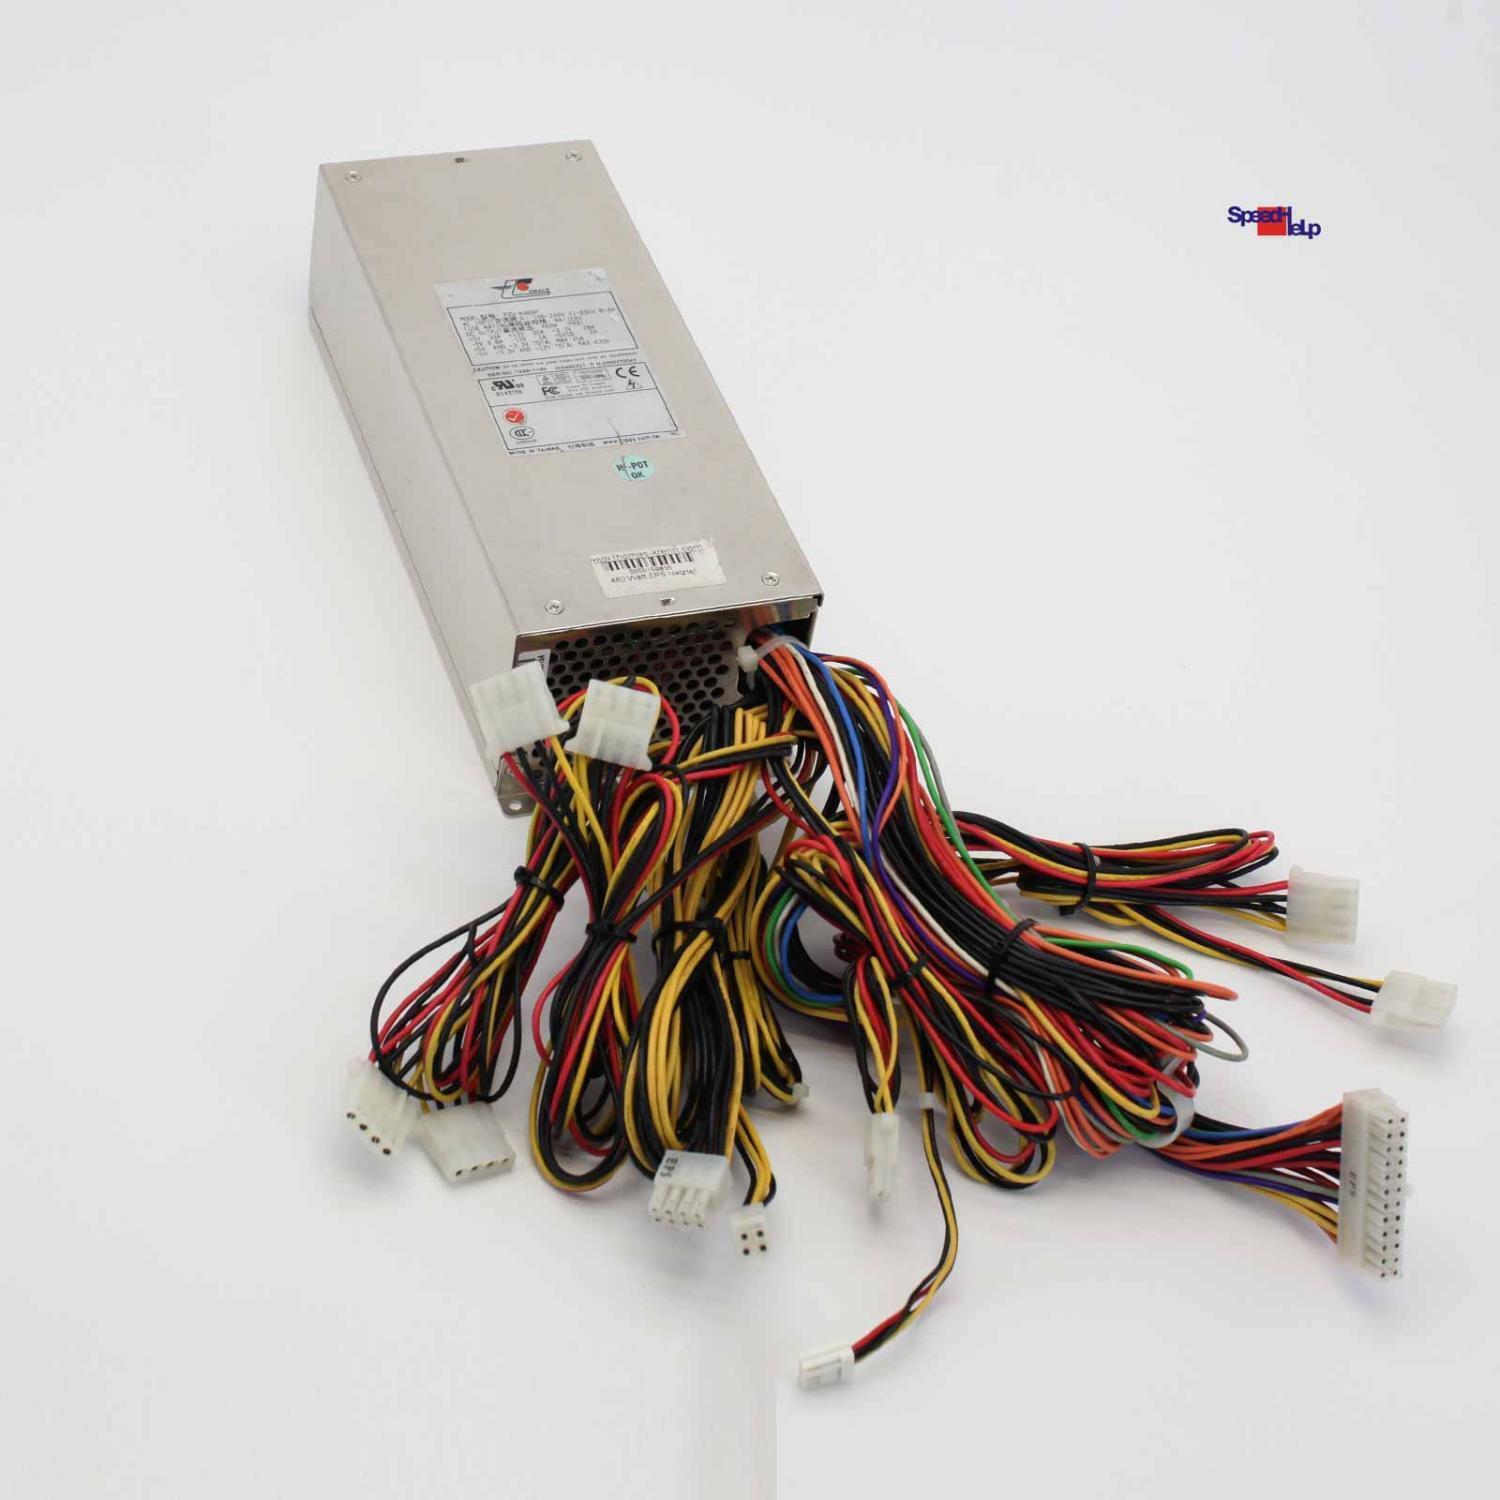 Original EMACS Server Power Supply Adapter P2G-6460P 2000270043 460W